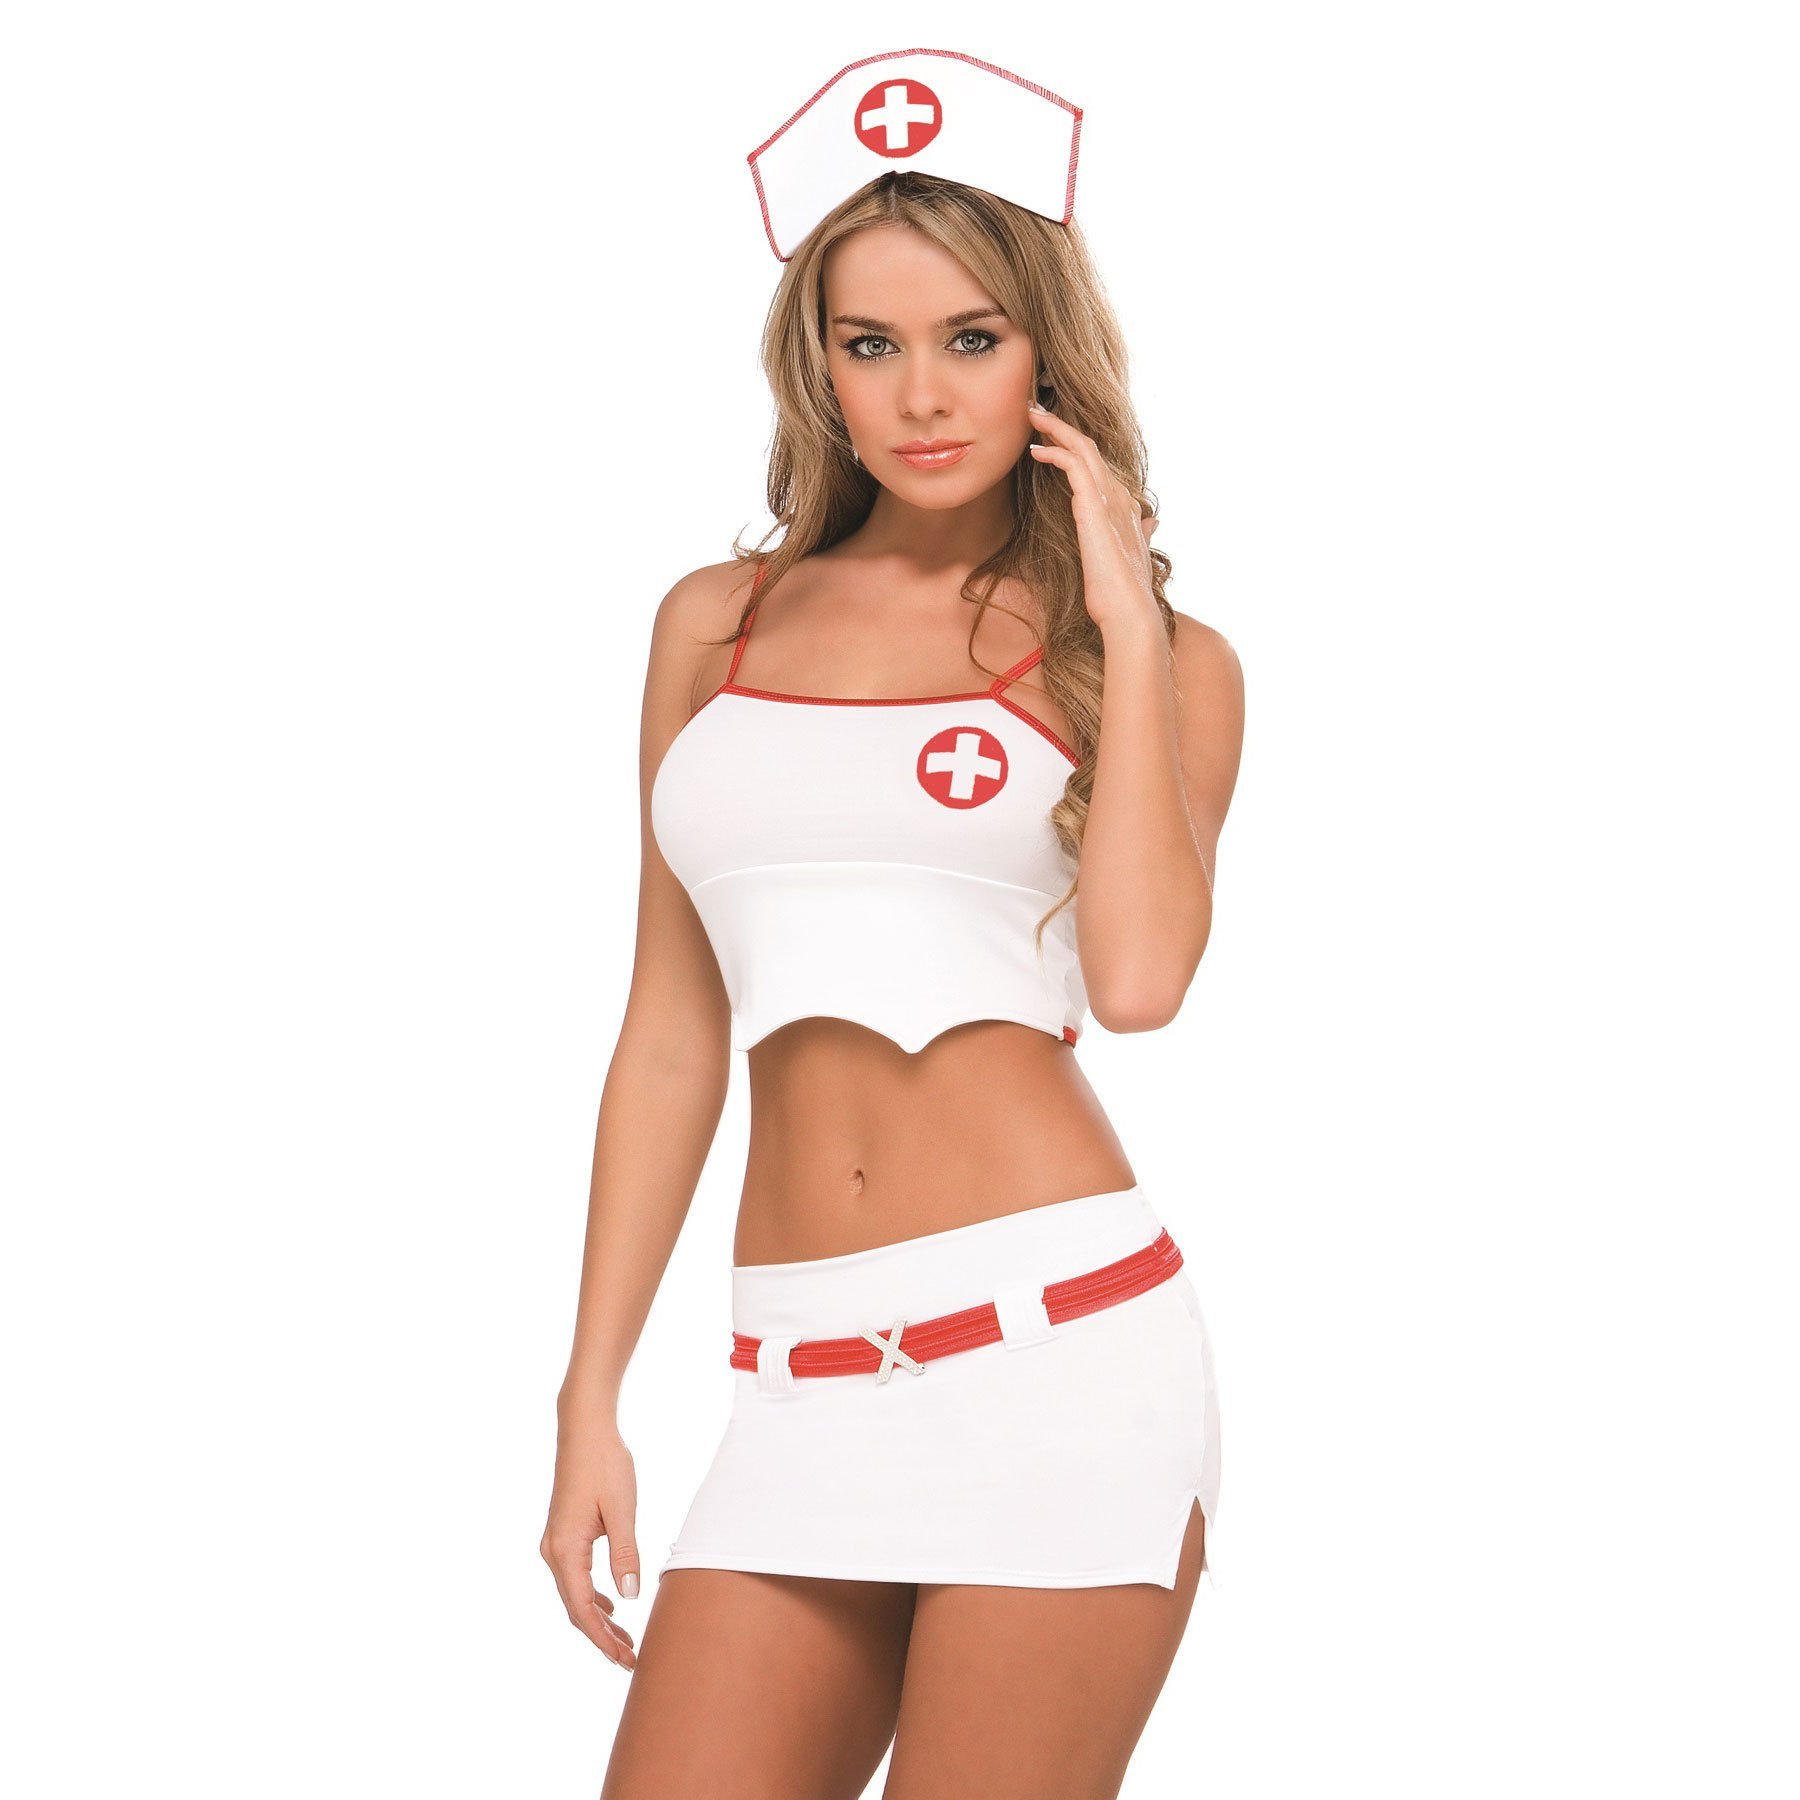 Эми Грин снимает униформу медсестры 